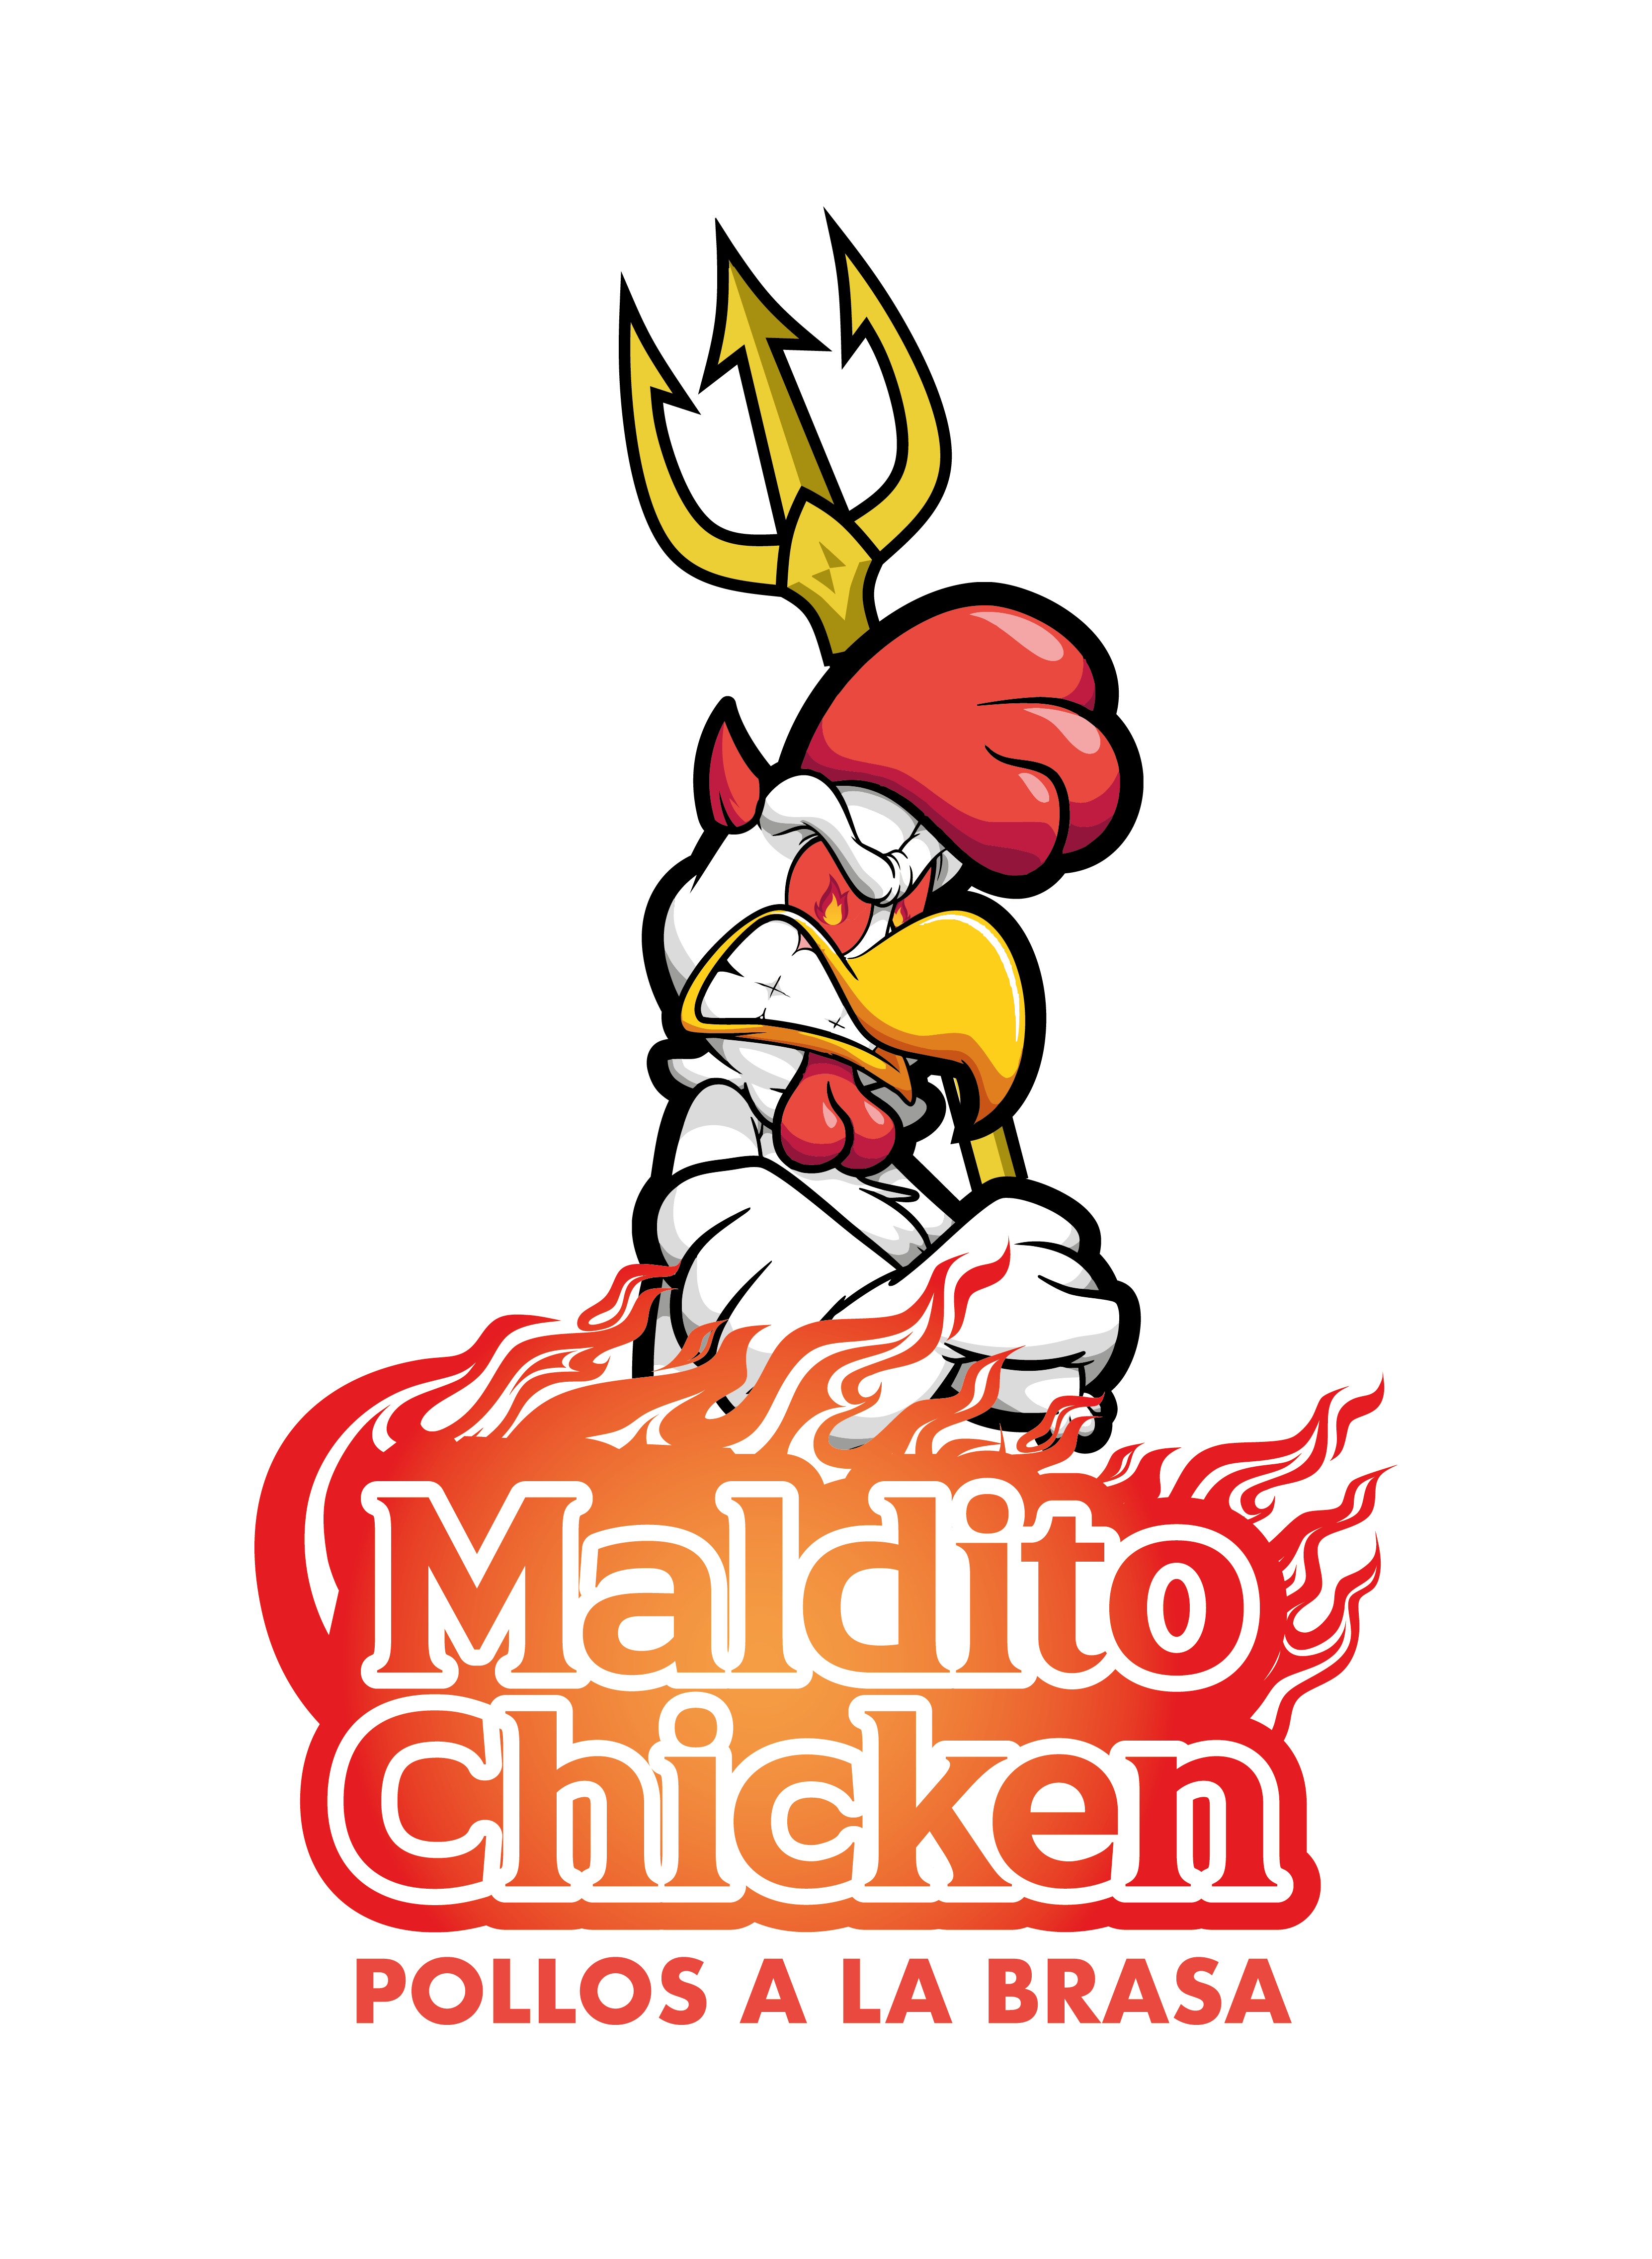 Maldito Chicken